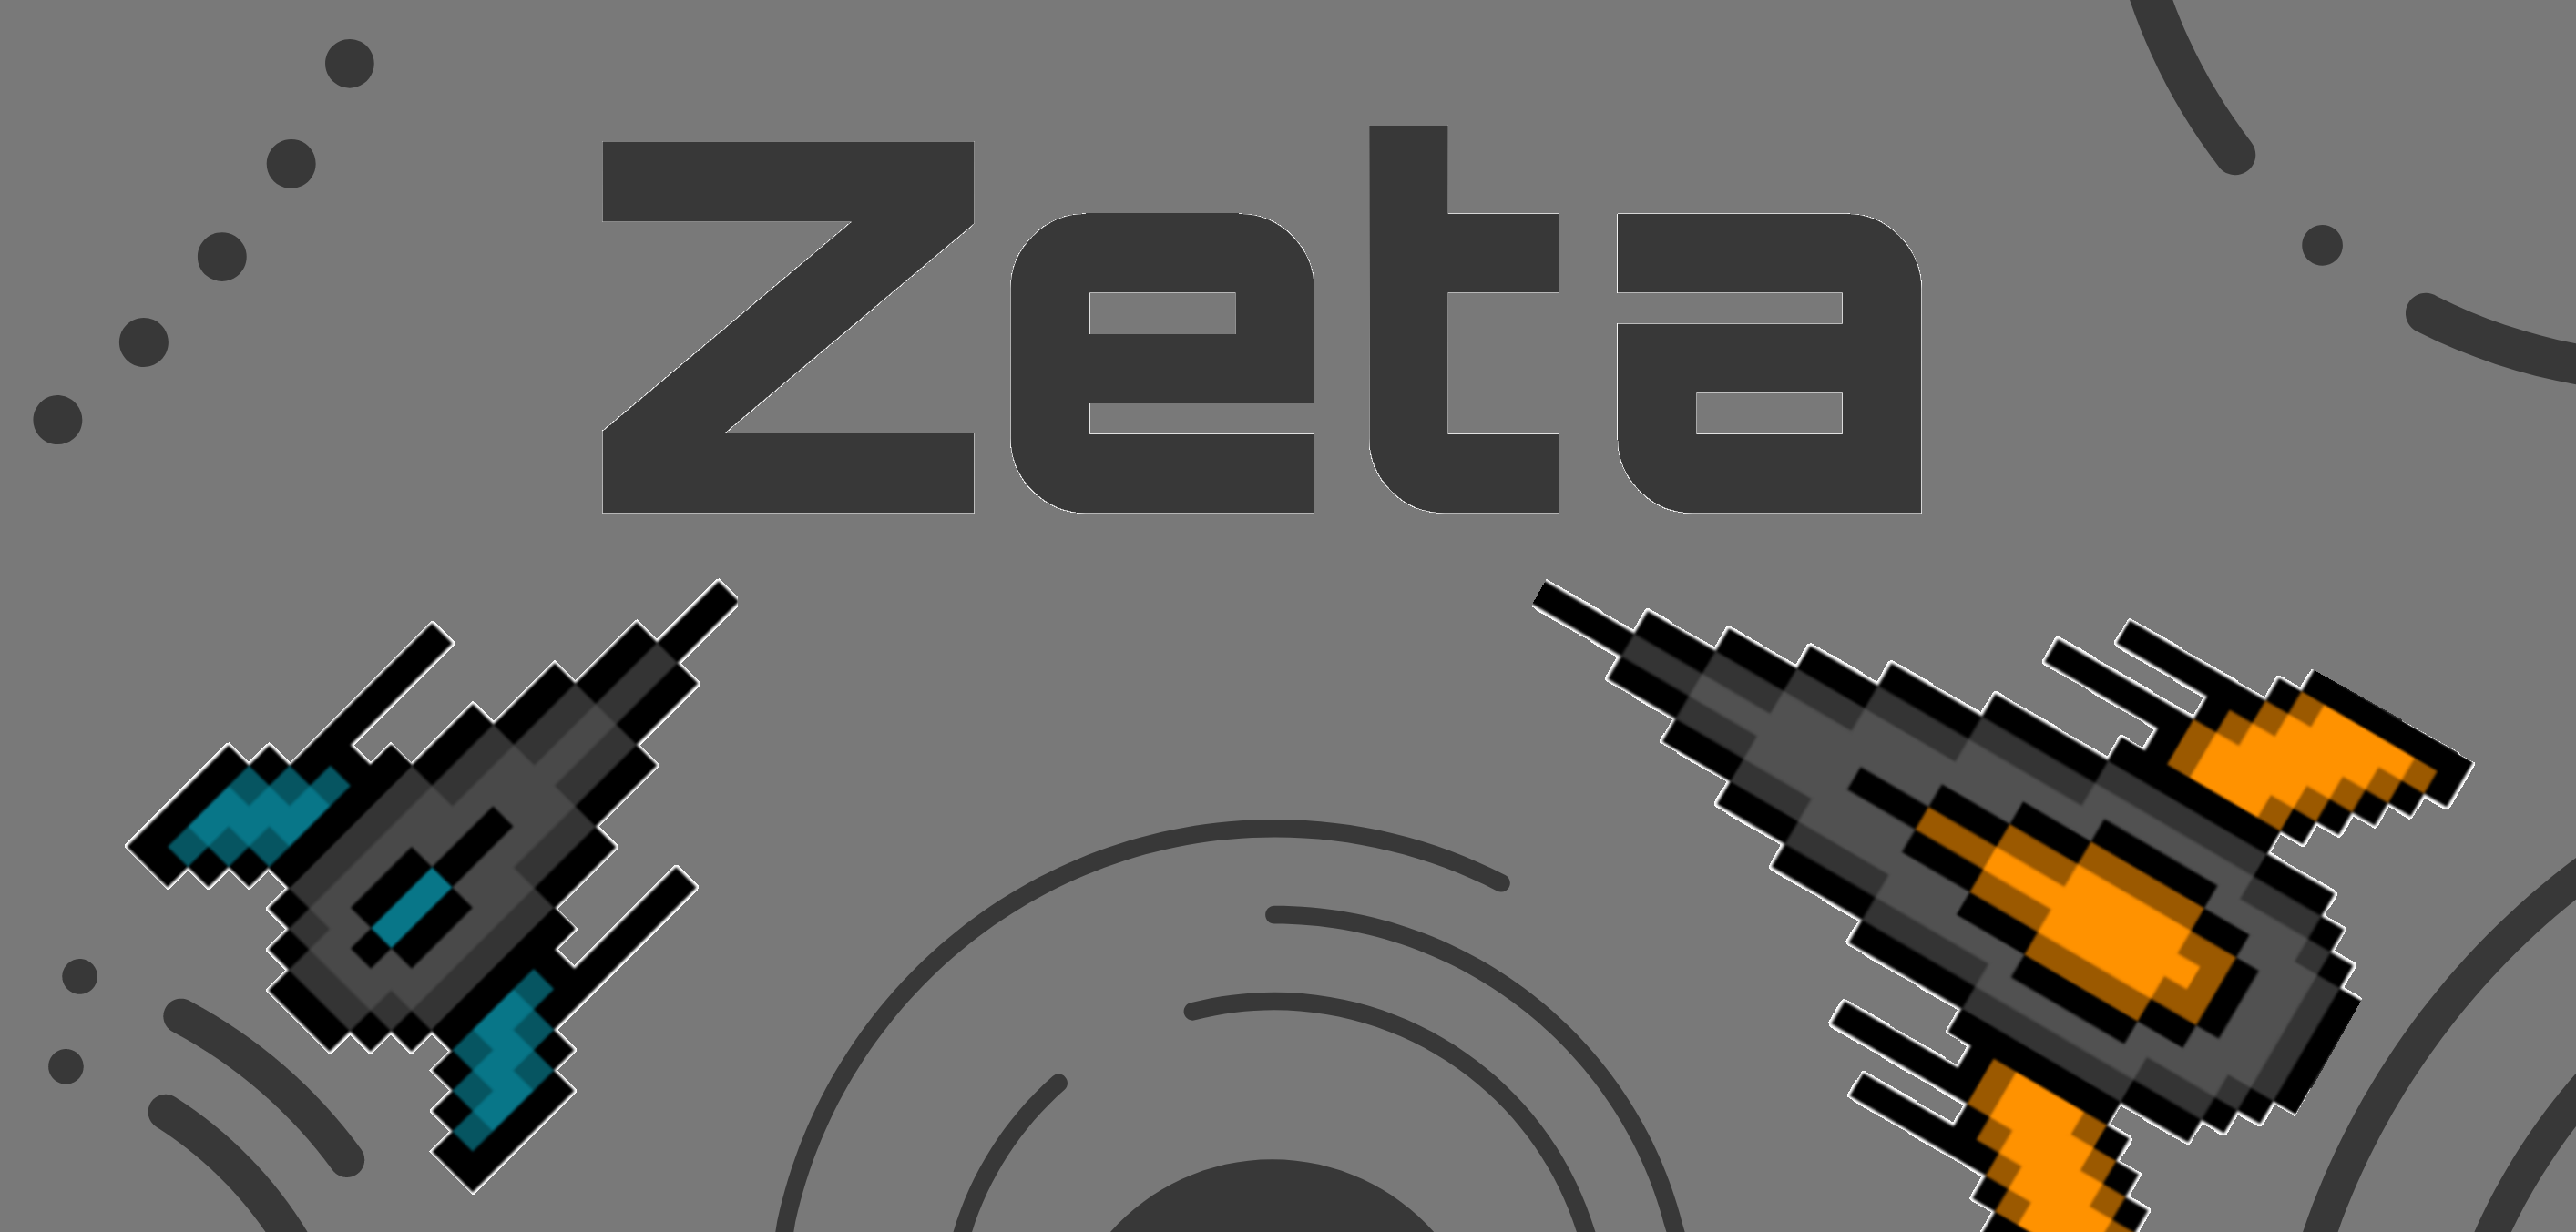 Zeta Android